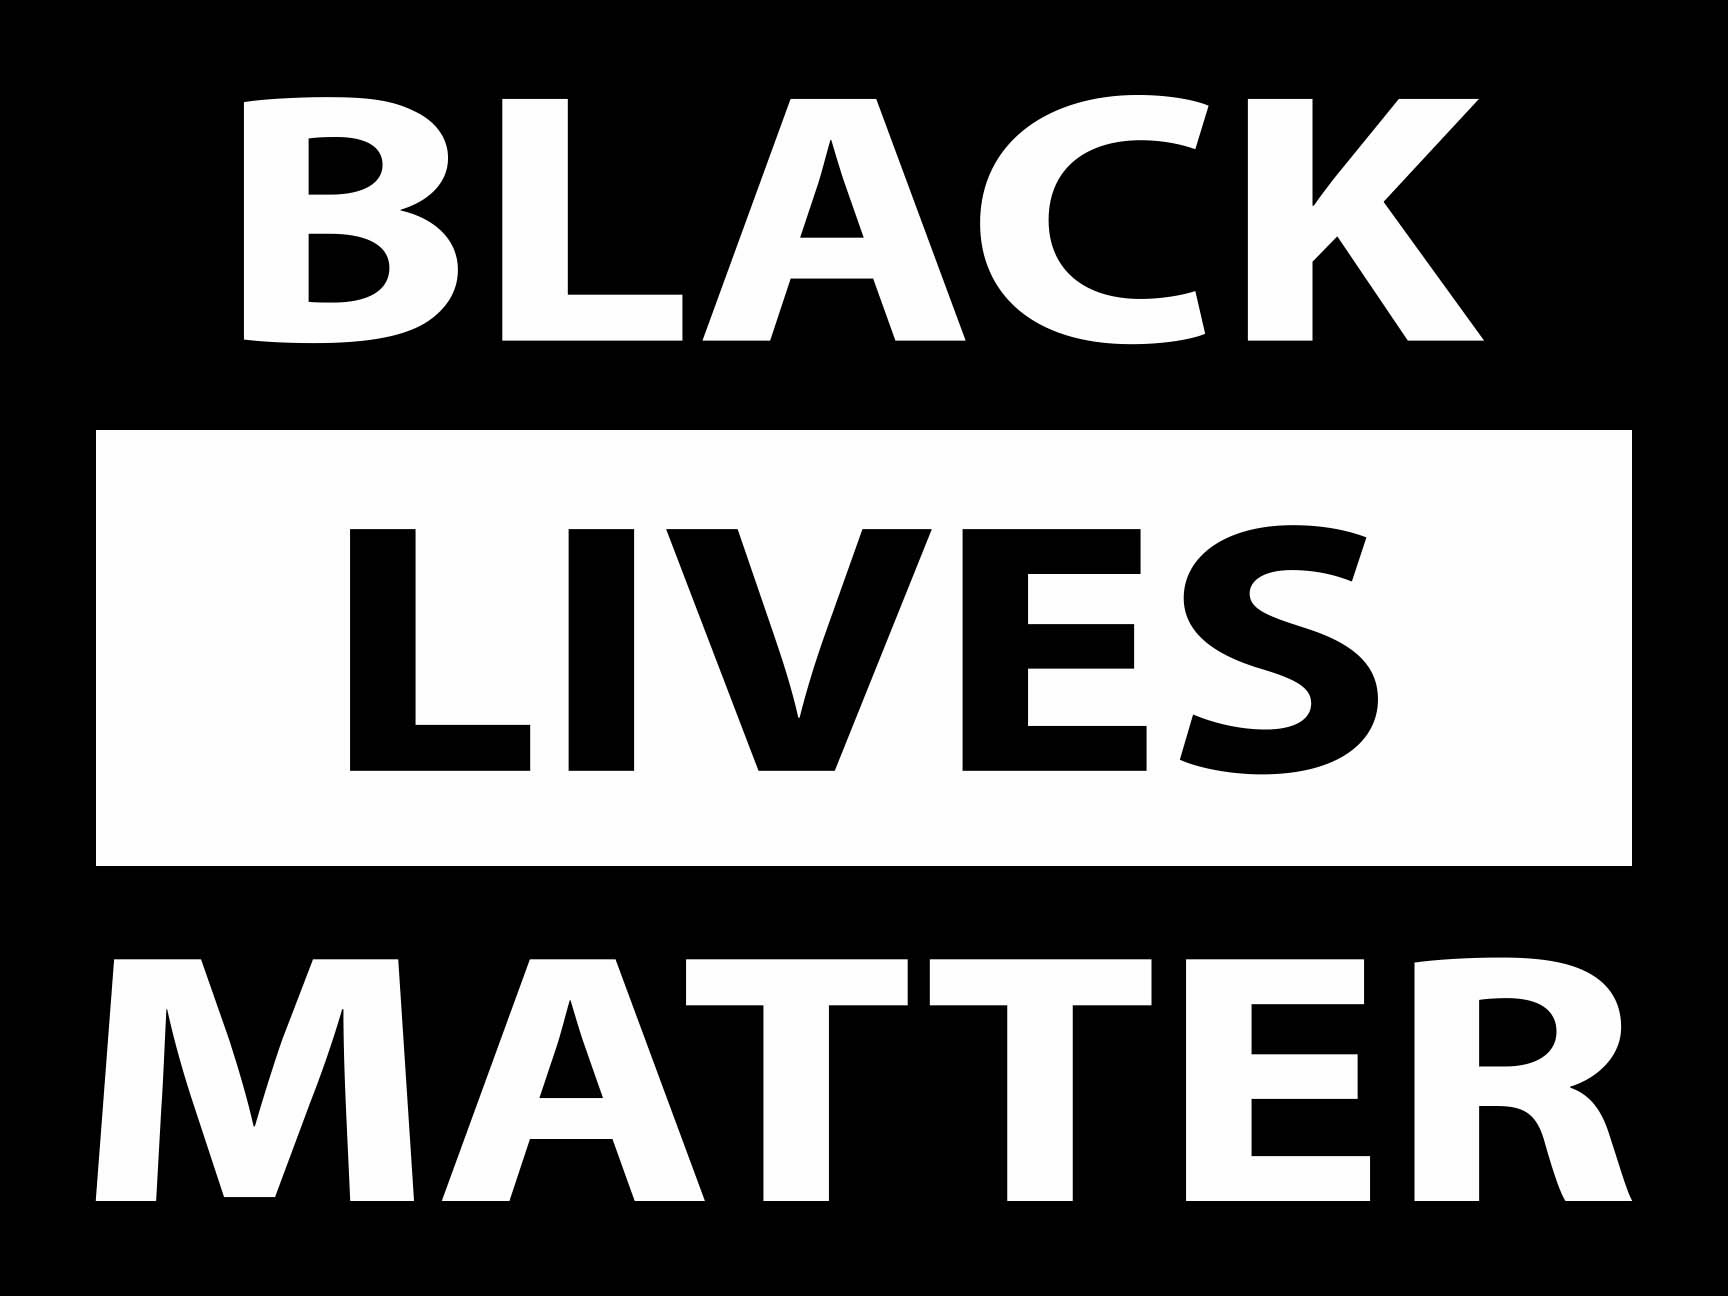 18" x 24" coroplast sign (Black Lives Matter)